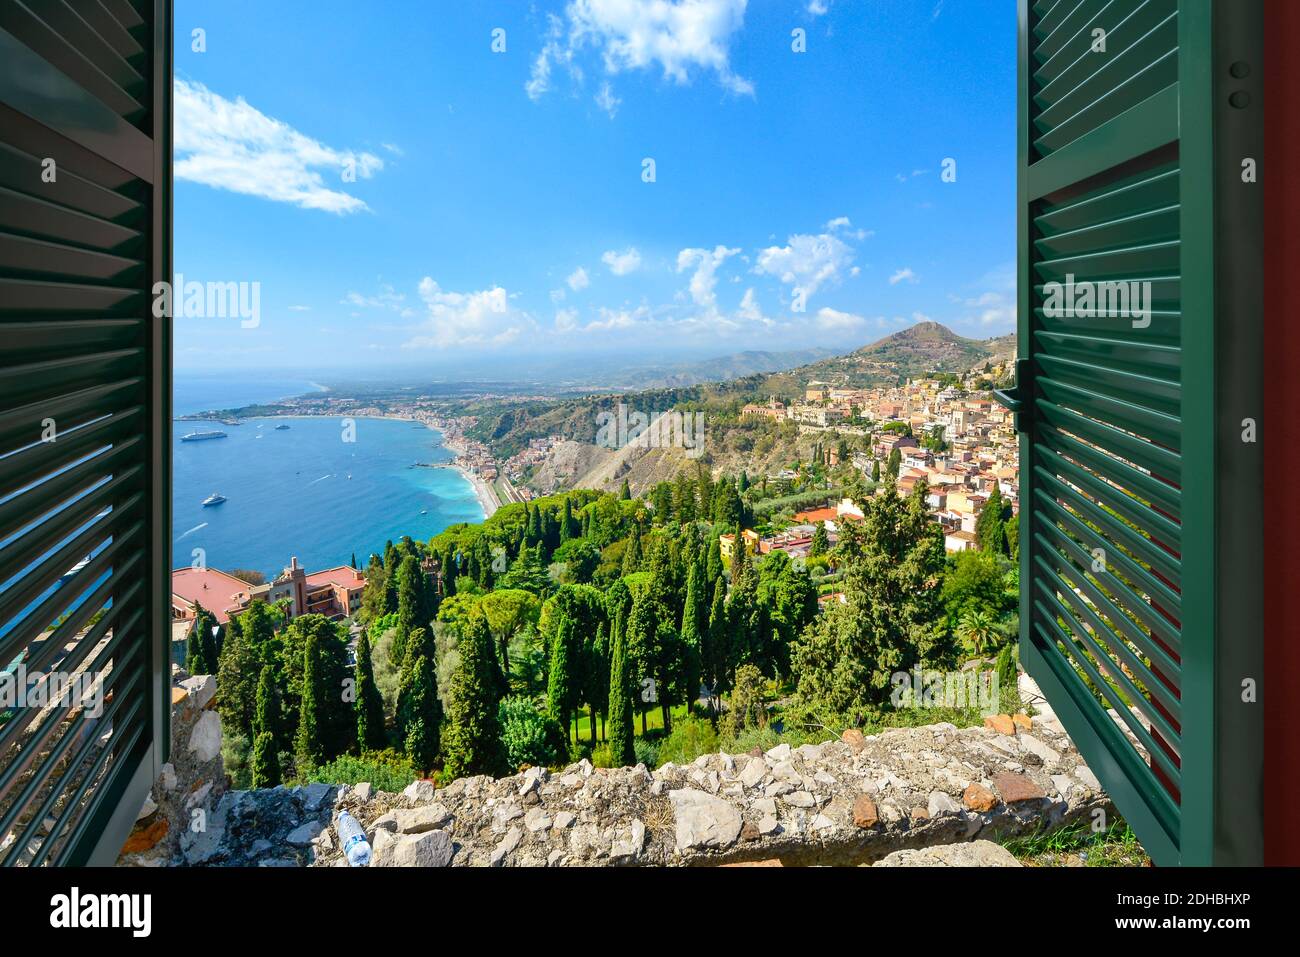 Vue par une fenêtre ouverte avec des volets de la côte et du village de Taormina Italie, sur l'île de Sicile dans la mer Méditerranée Banque D'Images